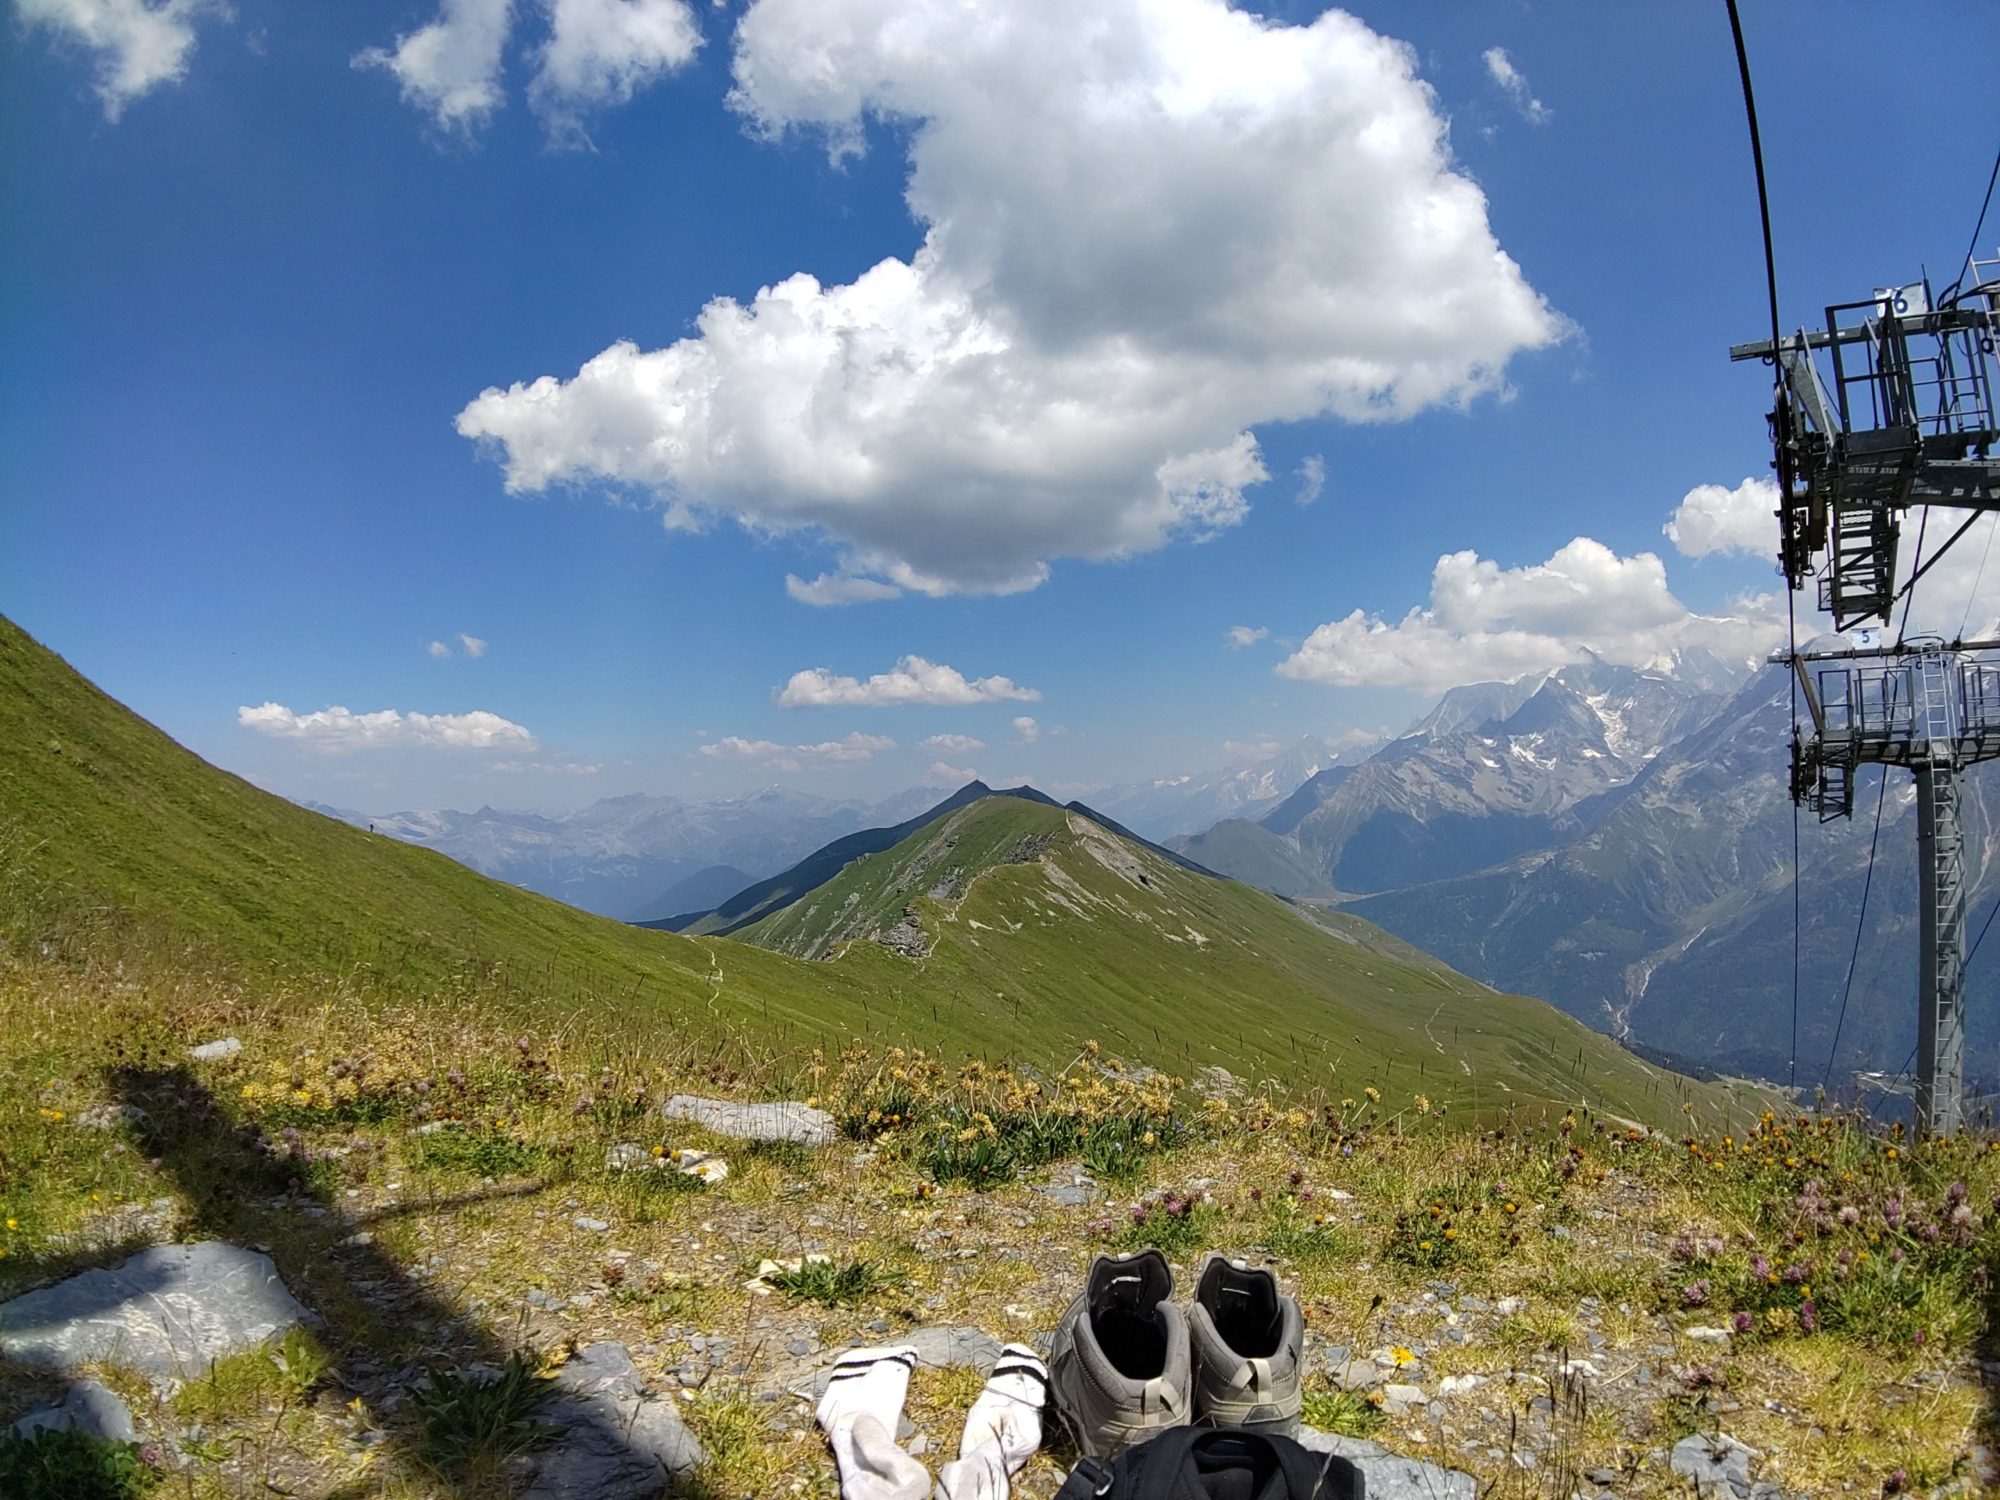 Photographie prise en montant le pic de l'Aiguille croche aux Contamines-Montjoie (Alpes, France)